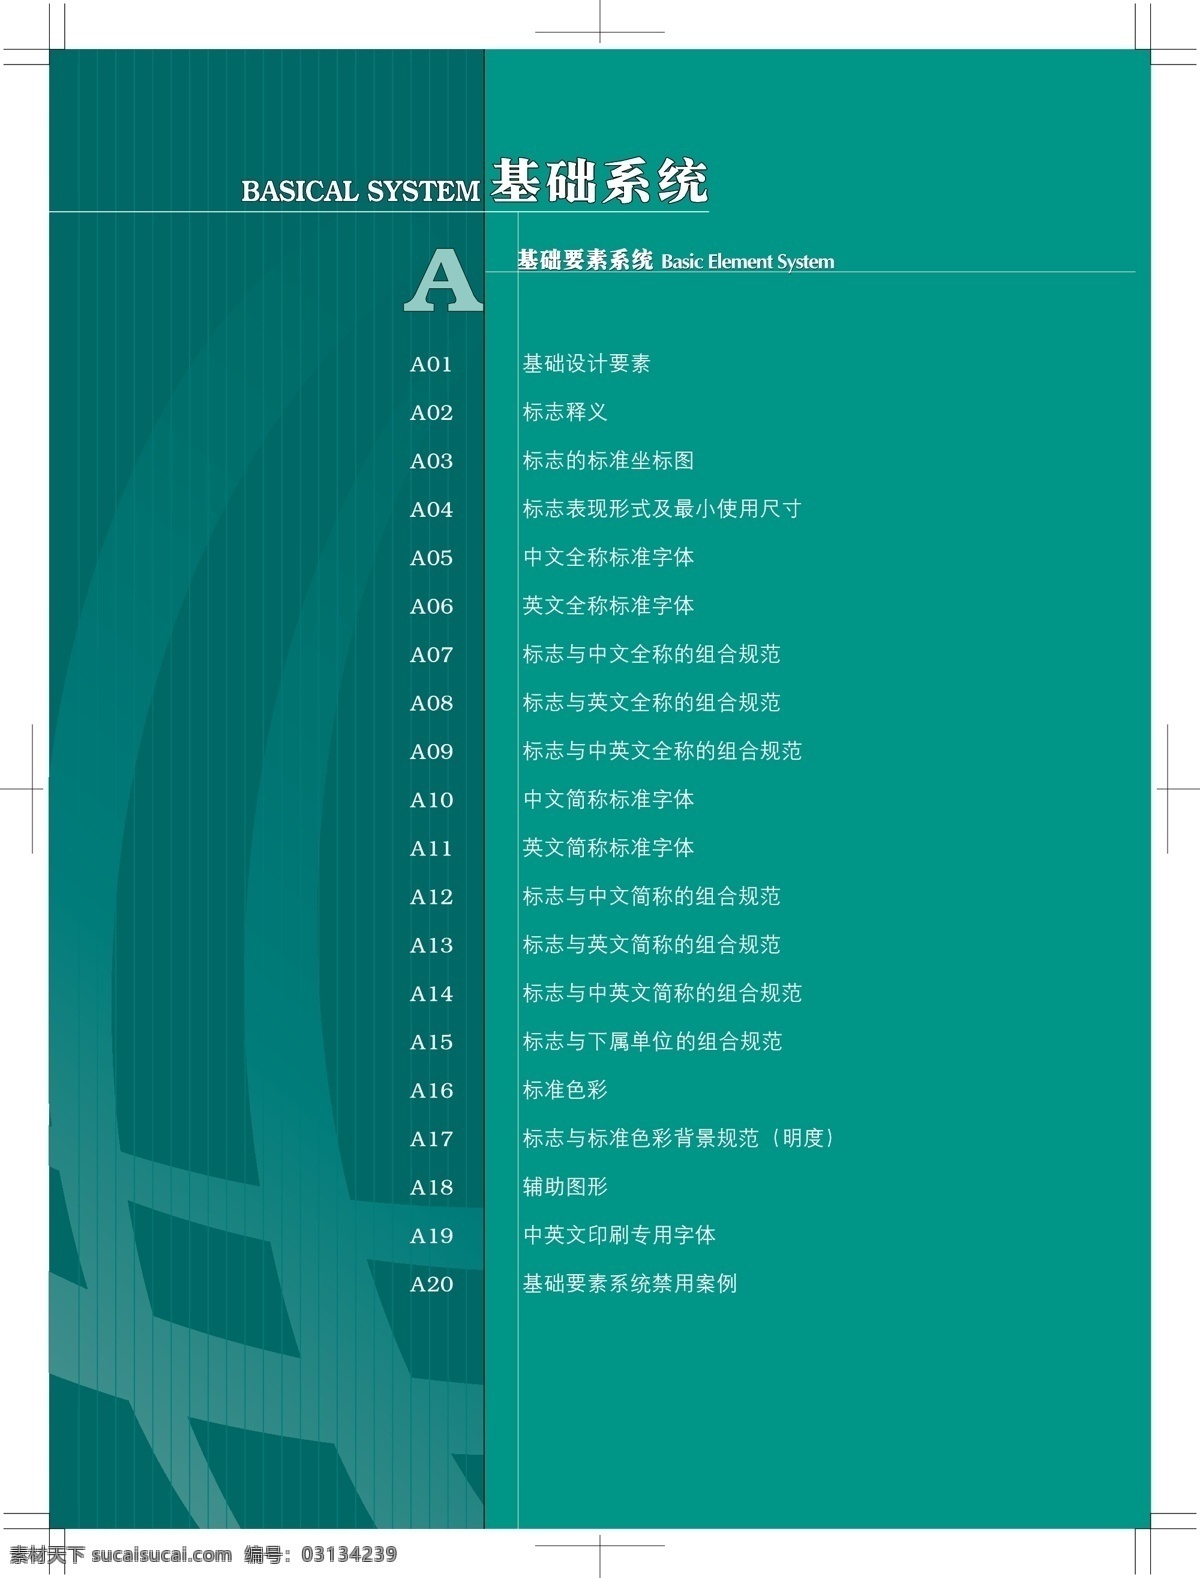 中国 国家 电网 公司 vis vi宝典 vi设计 矢量 文件 矢量图